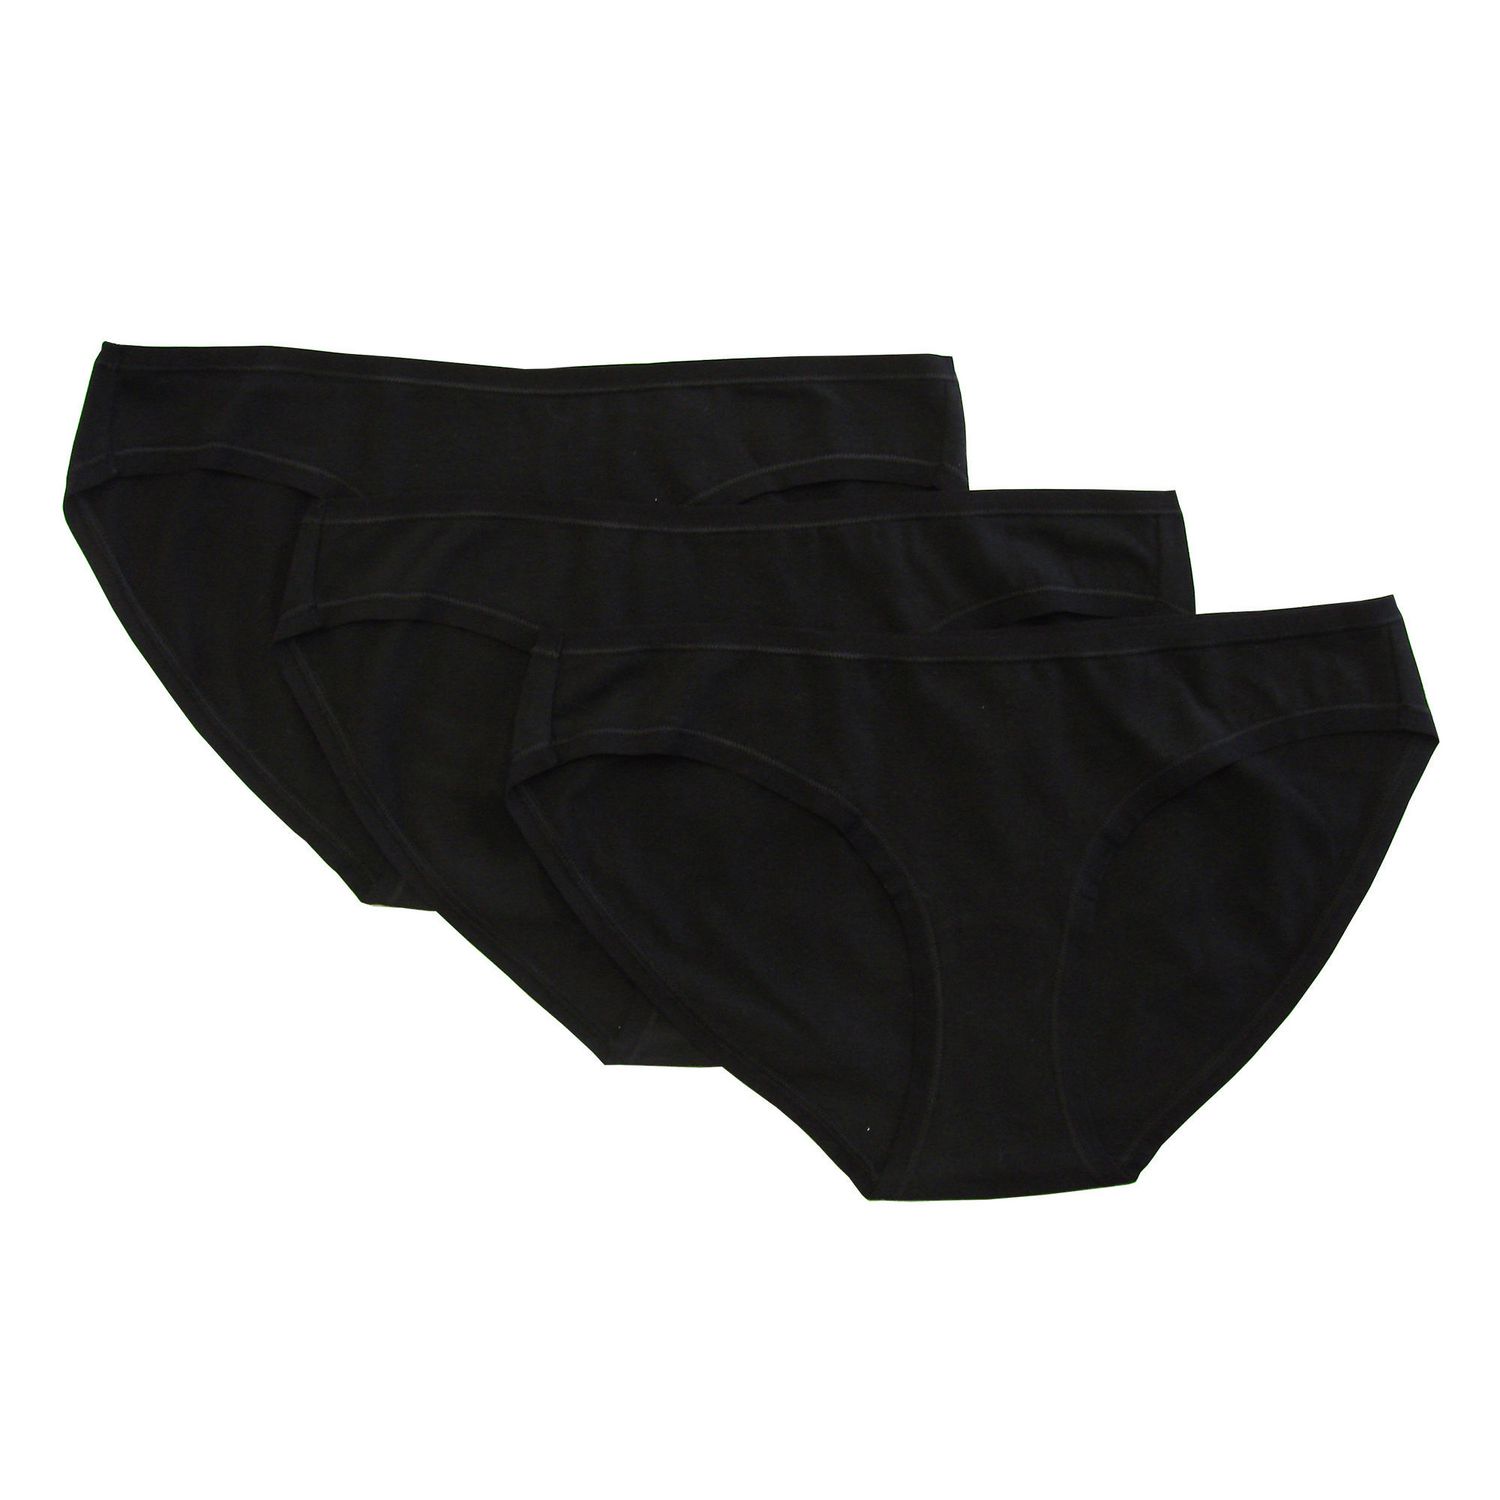 adidas women's bikini briefs 3-pack - Cotton stretch underwear, 34,95 €